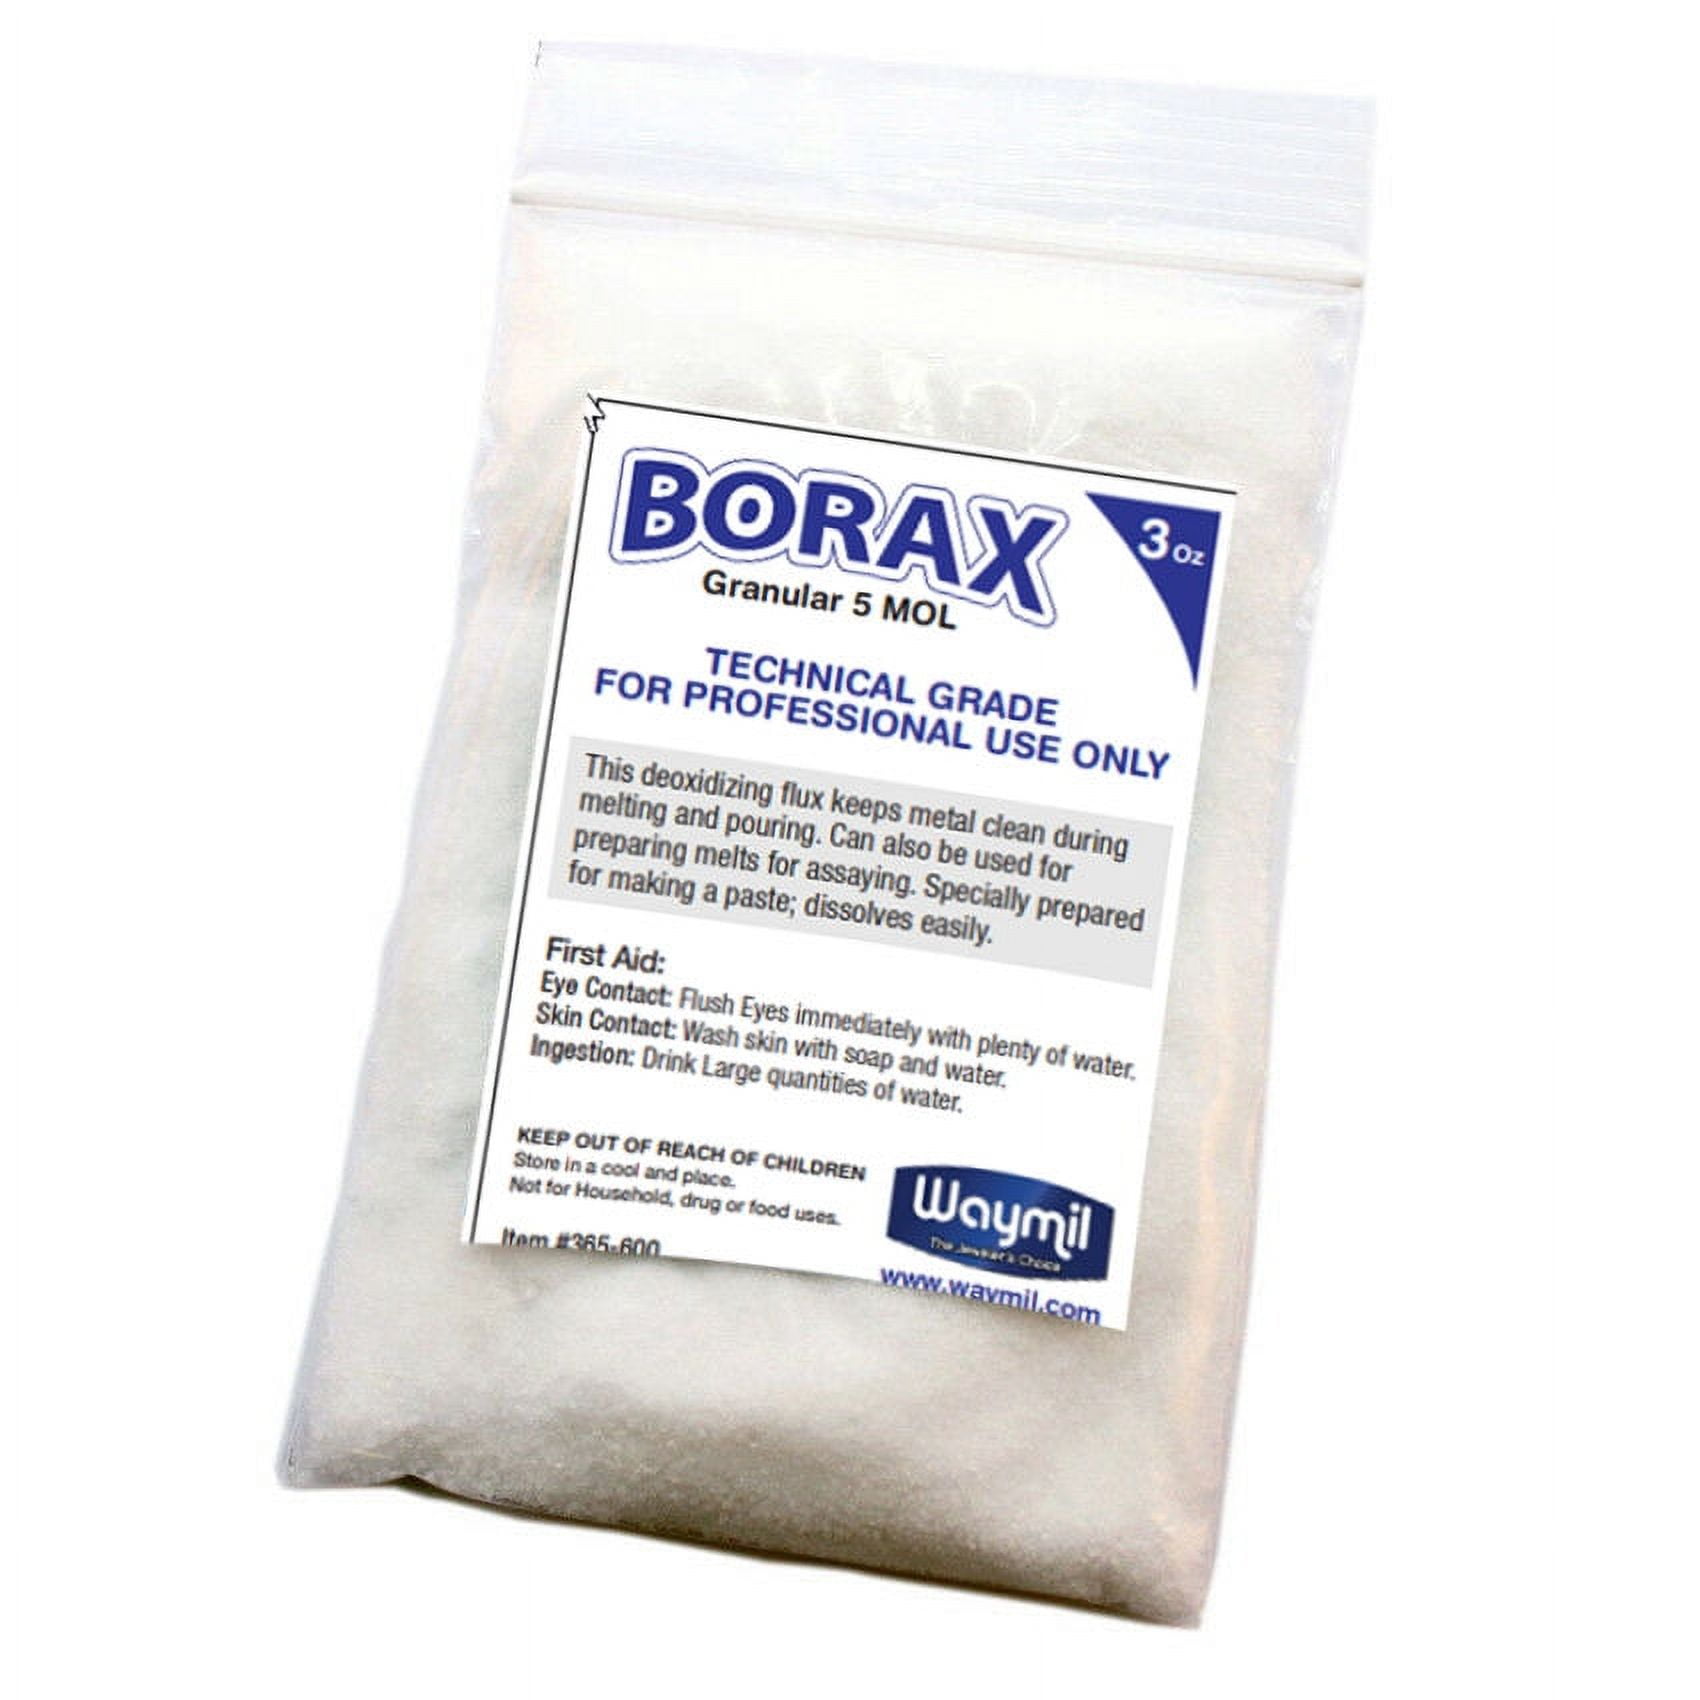 Welding Flux Borax, Borax, 1 Bag White Borax Flux, For Melting Gold Silver  